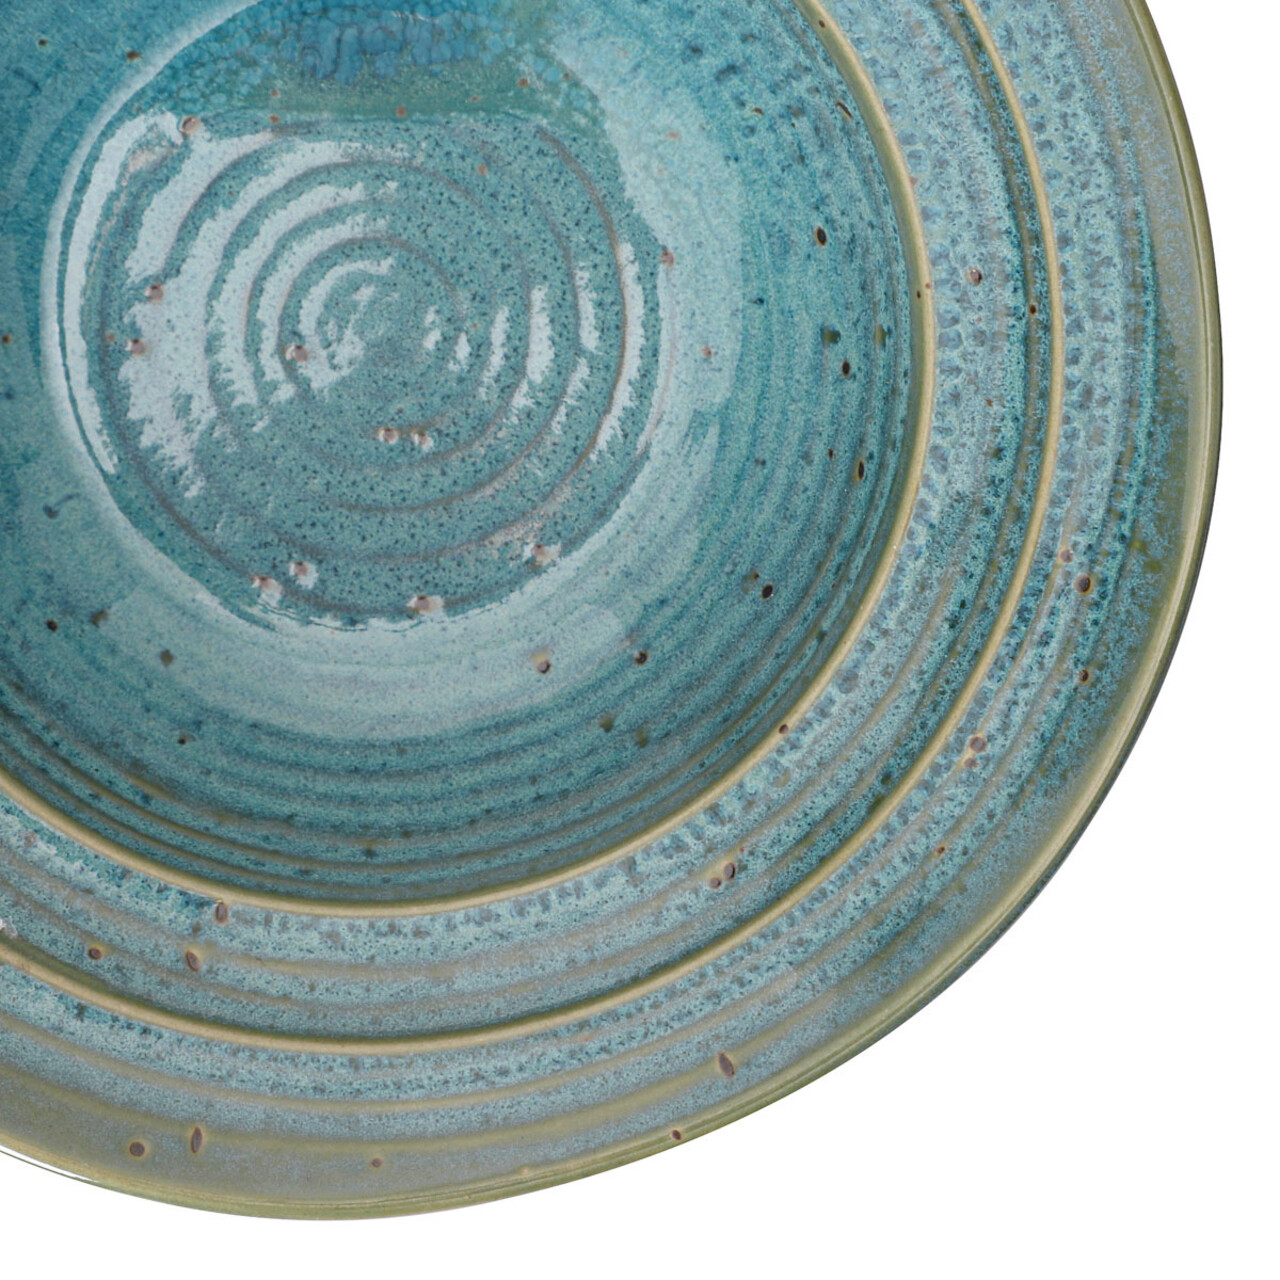 Farfurie adanca Palmera, Homla, 19 cm, ceramica, turcoaz